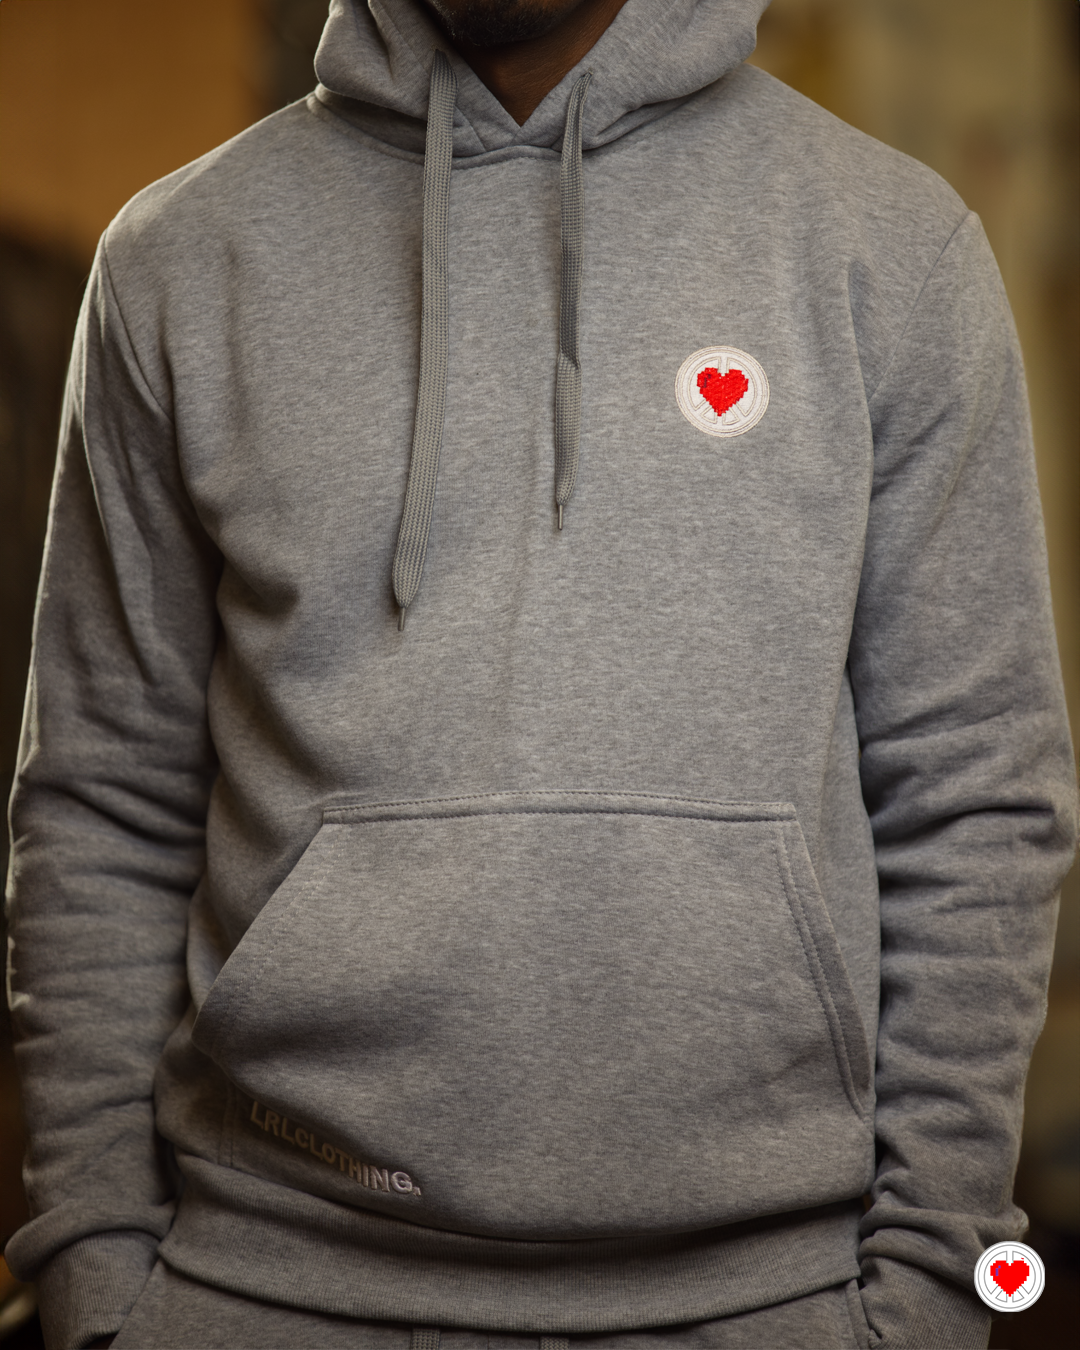 “Men’s Grey Heart Logo Sweatsuit”